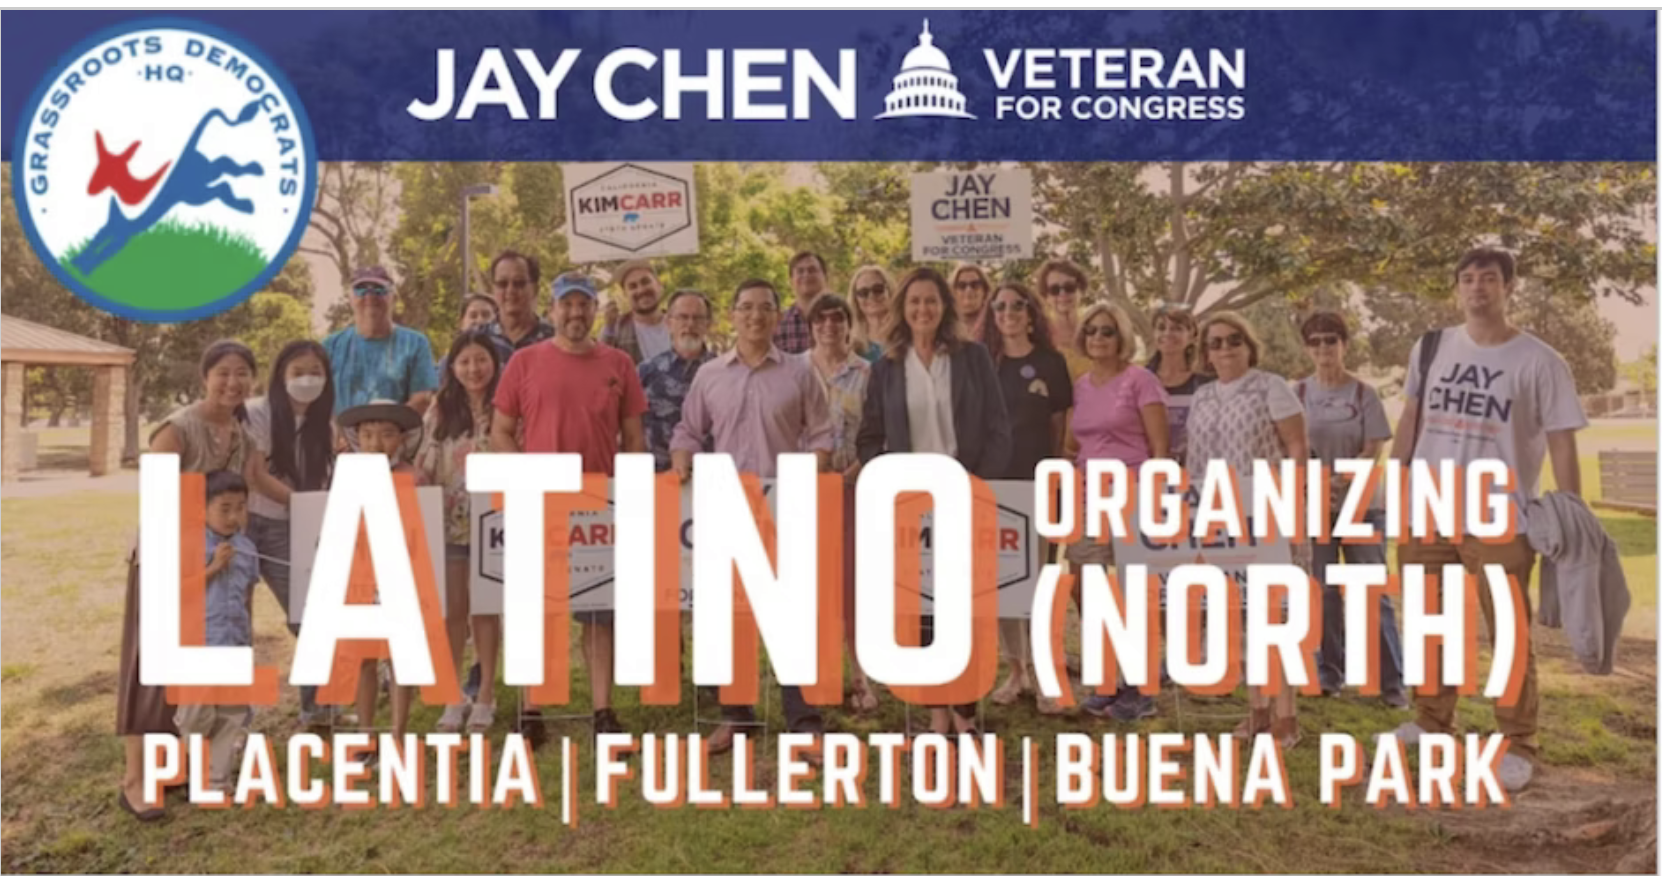 Latino Organizing (North): Placentia, Fullerton, Buena Park